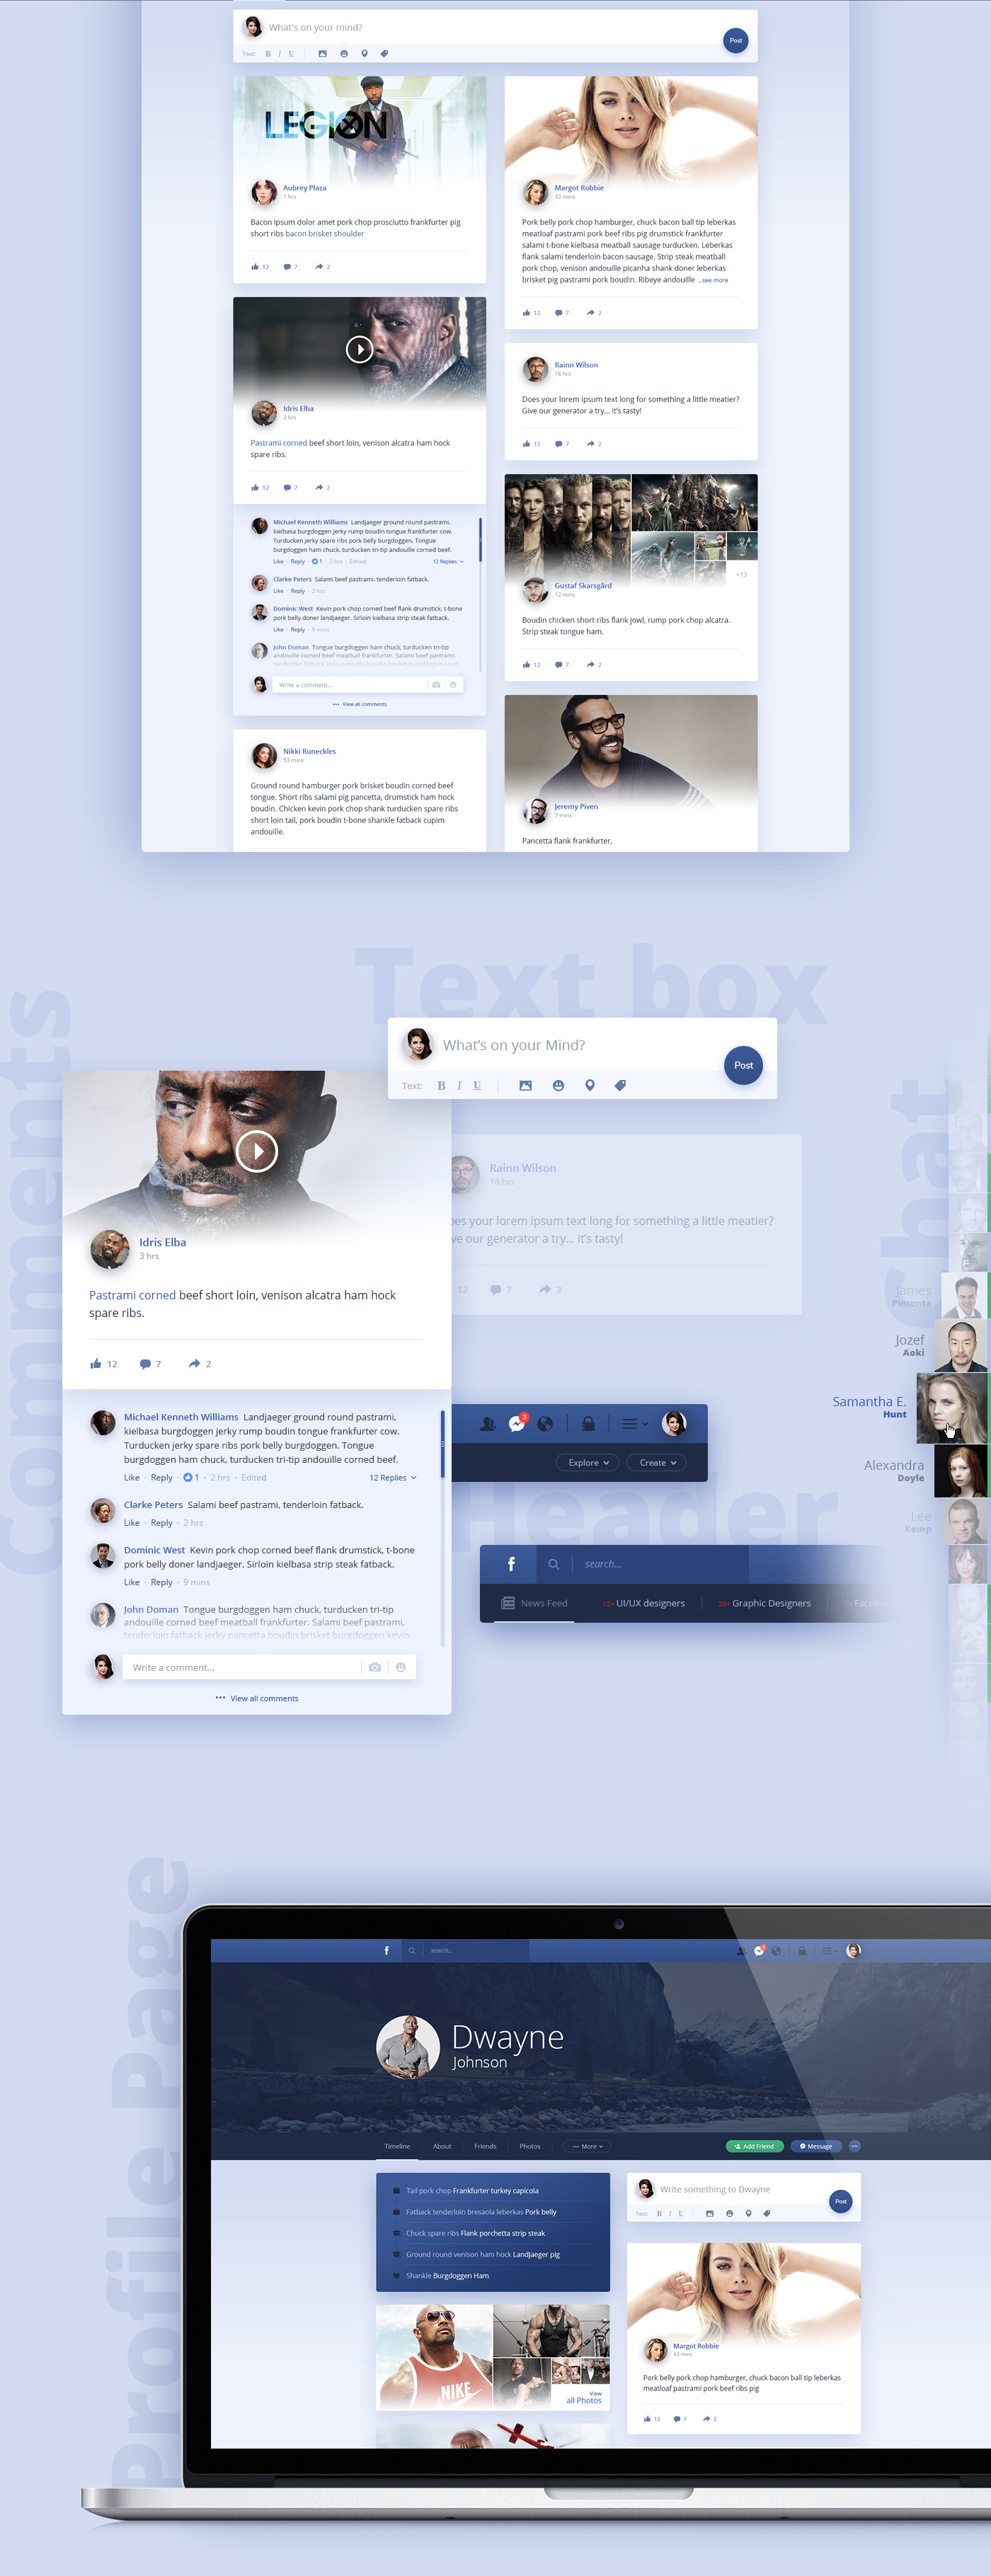 facebook concept redesign social calendar timeline messenger Webdesign UI